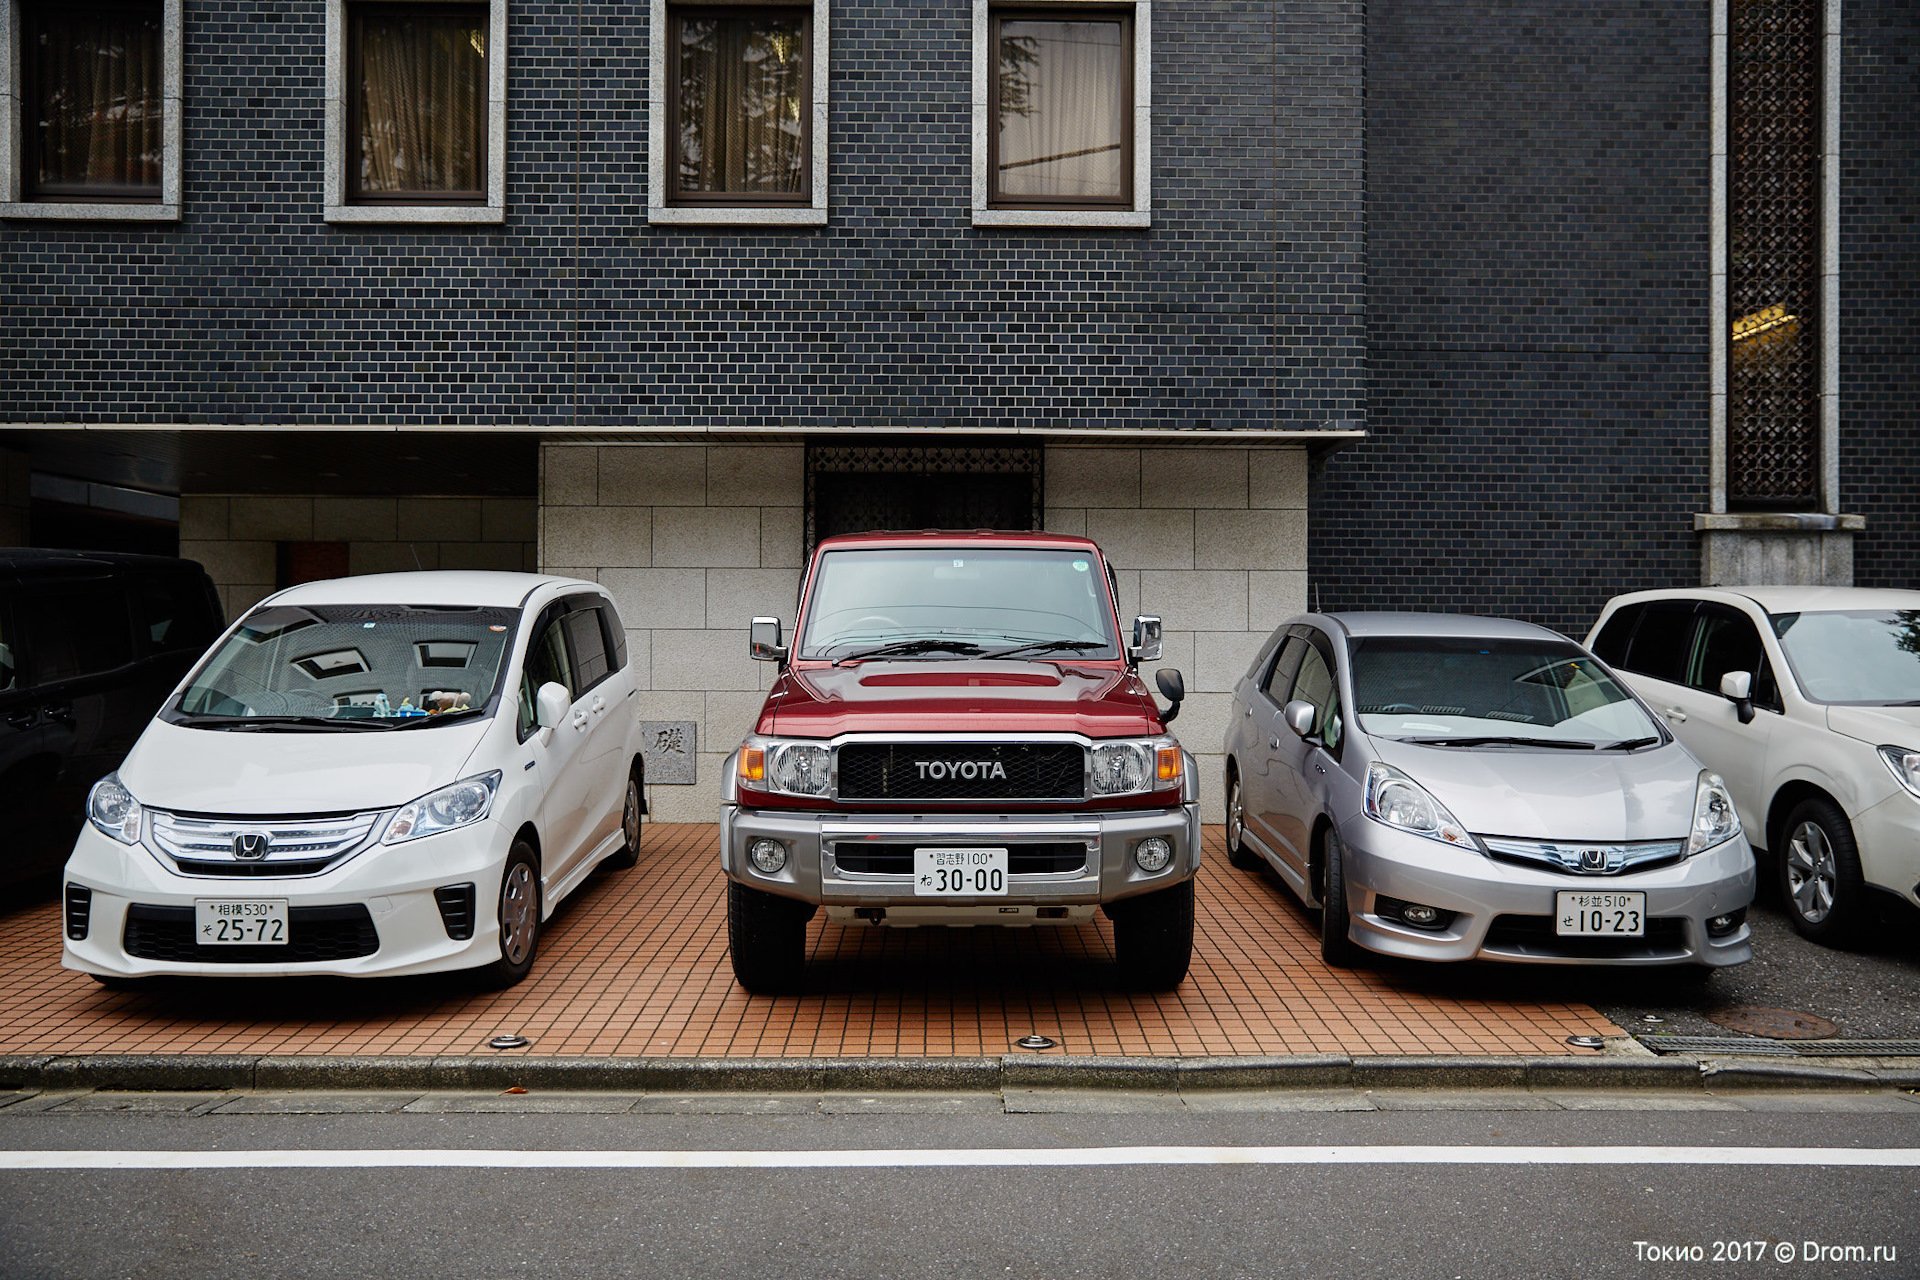 Продажа машин в японии. Несколько номеров на машине. Надежные японские автомобили. Номера автомобилей в Токио. Японские автомобили популярные в Японии.